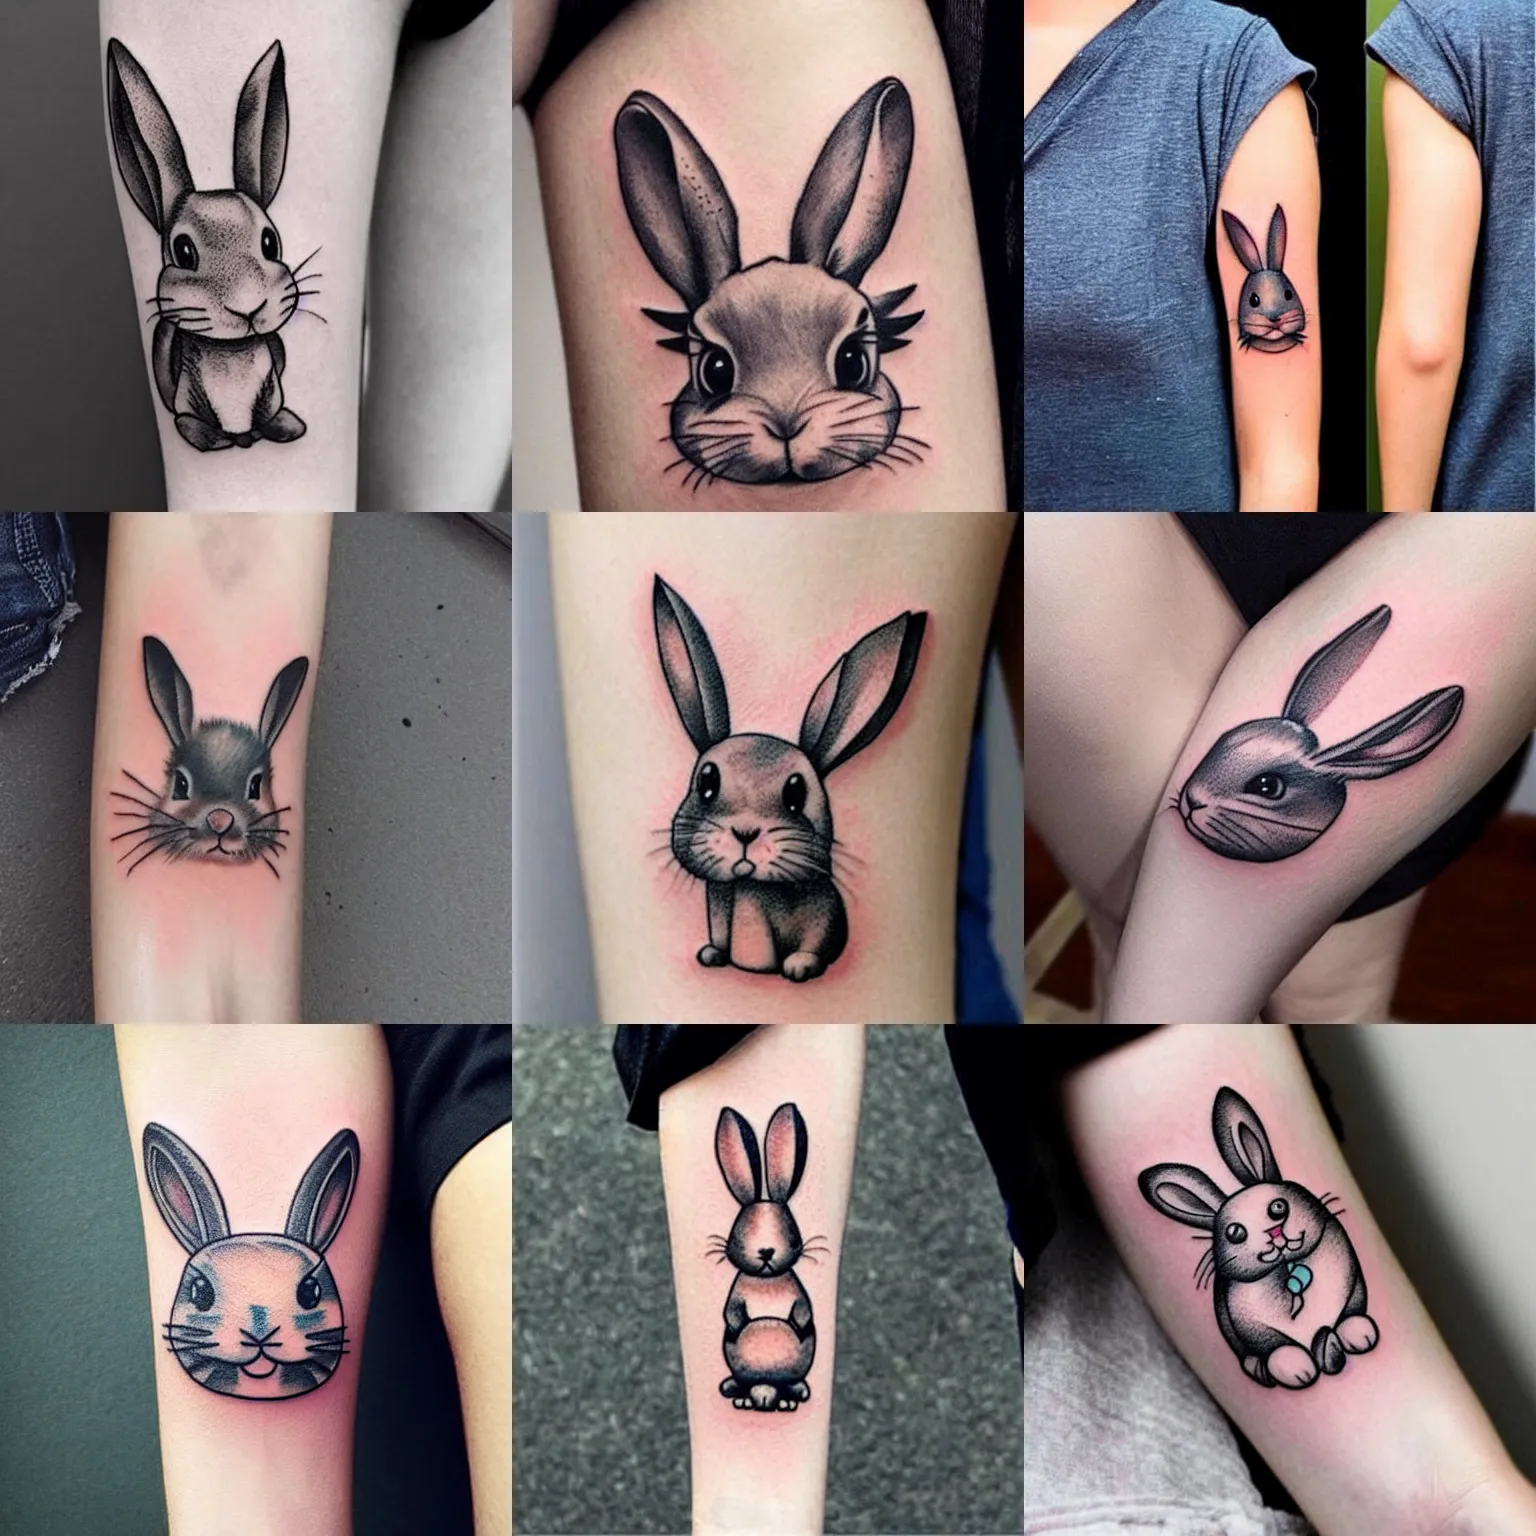 Rabbit Tattoo: Meaning, Symbolism, Design & Ideas - TATTOOGOTO